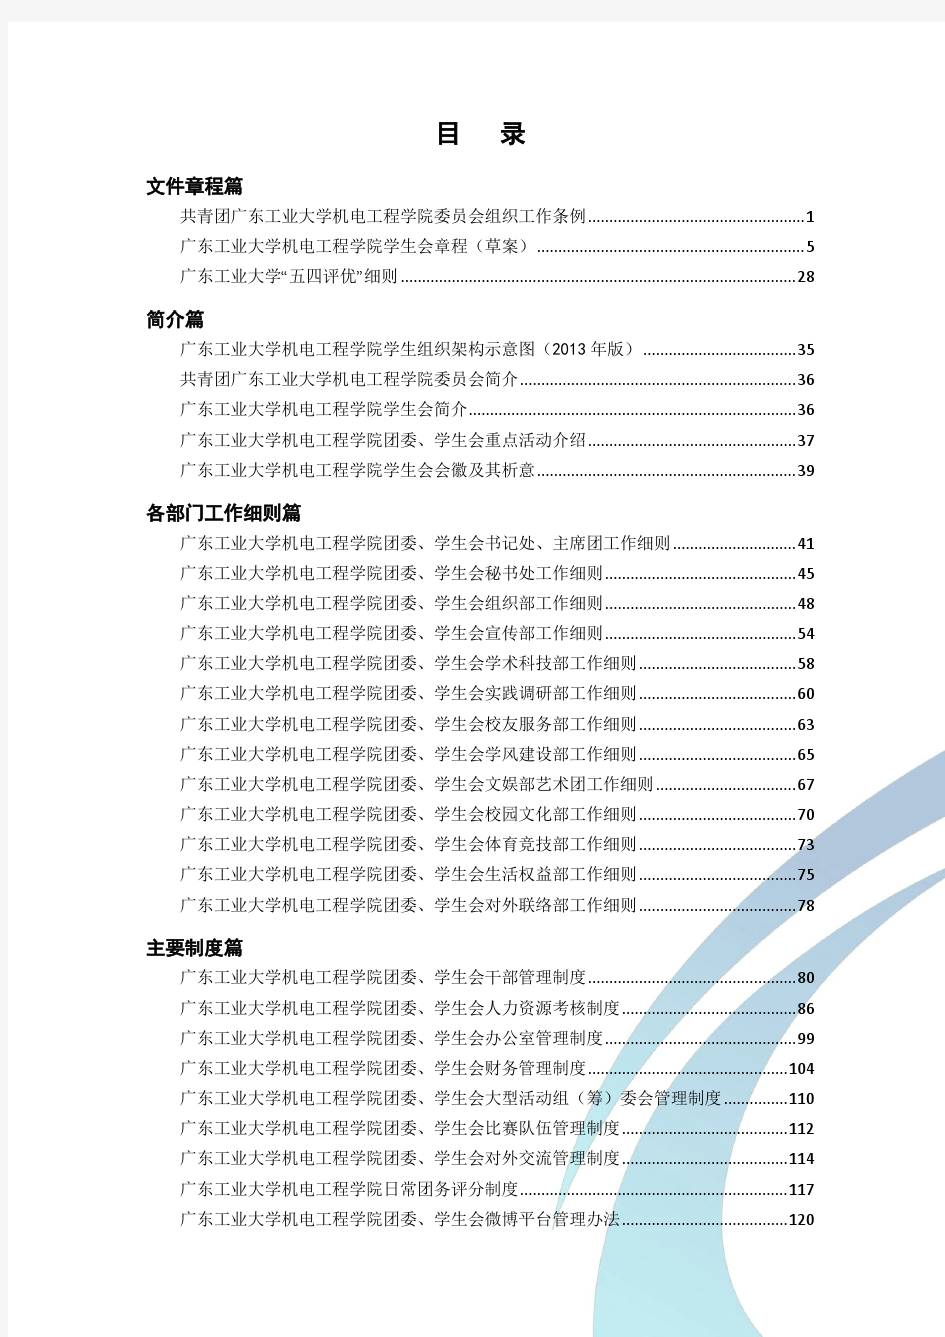 广东工业大学机电工程学院团委、学生会工作手册(2014.3.23)-带水印